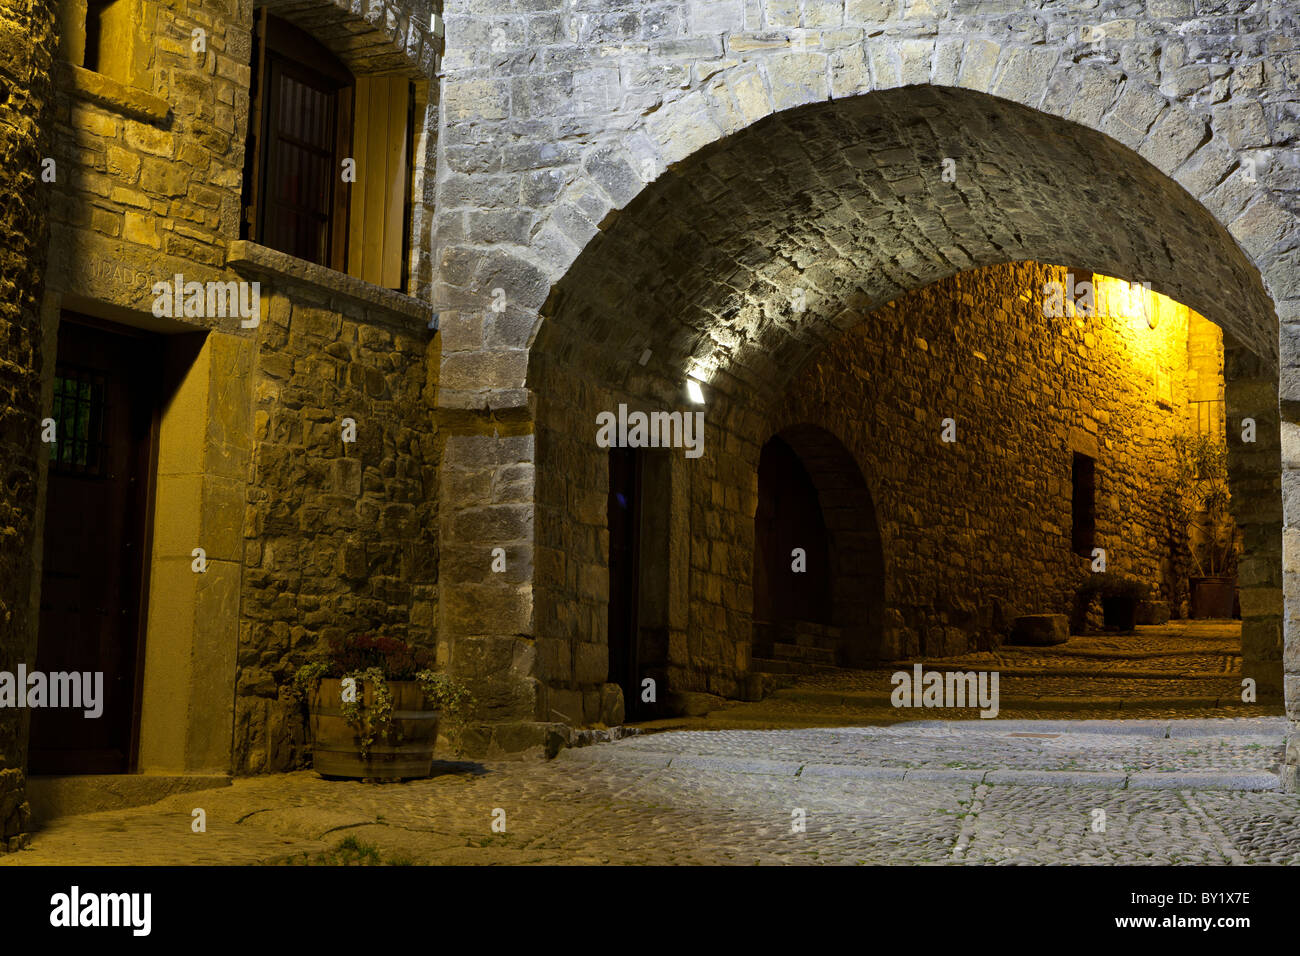 Village of Ainsa, Huesca, Spain Stock Photo